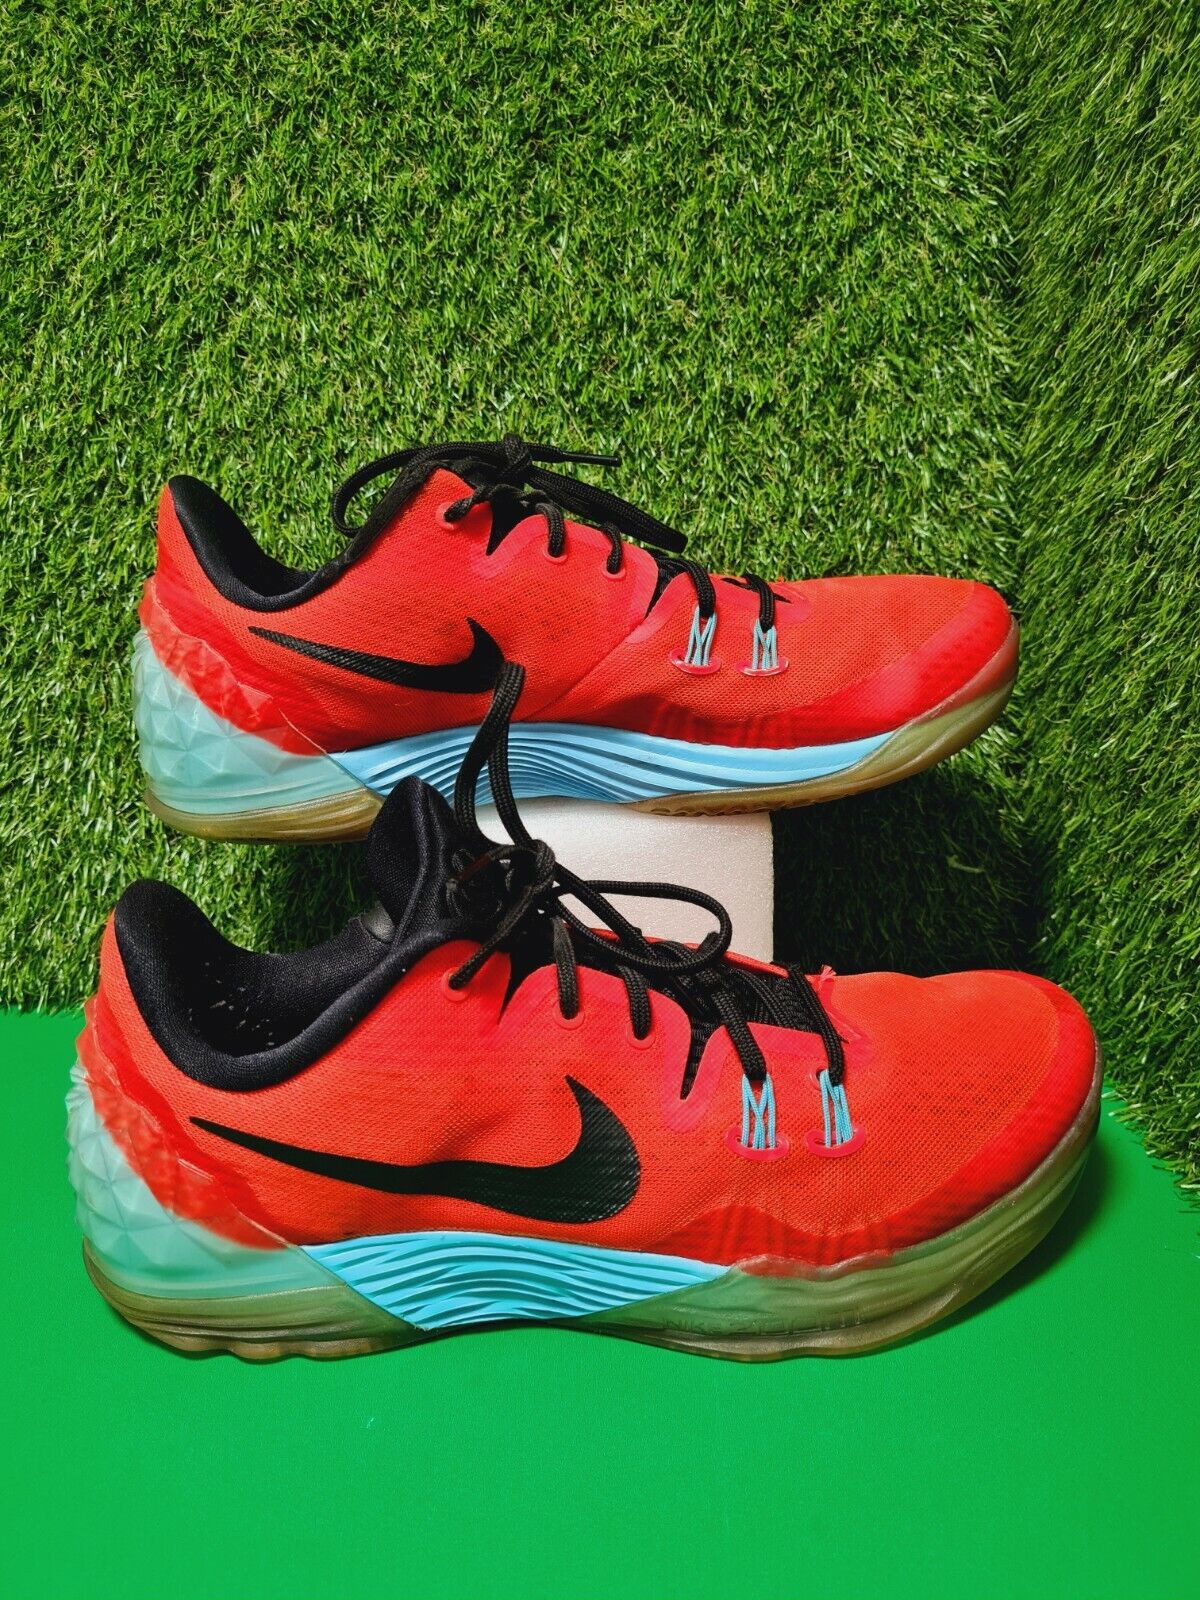 Size 9.5 - Nike Zoom Kobe Venomenon 5 Bright Crimson for sale